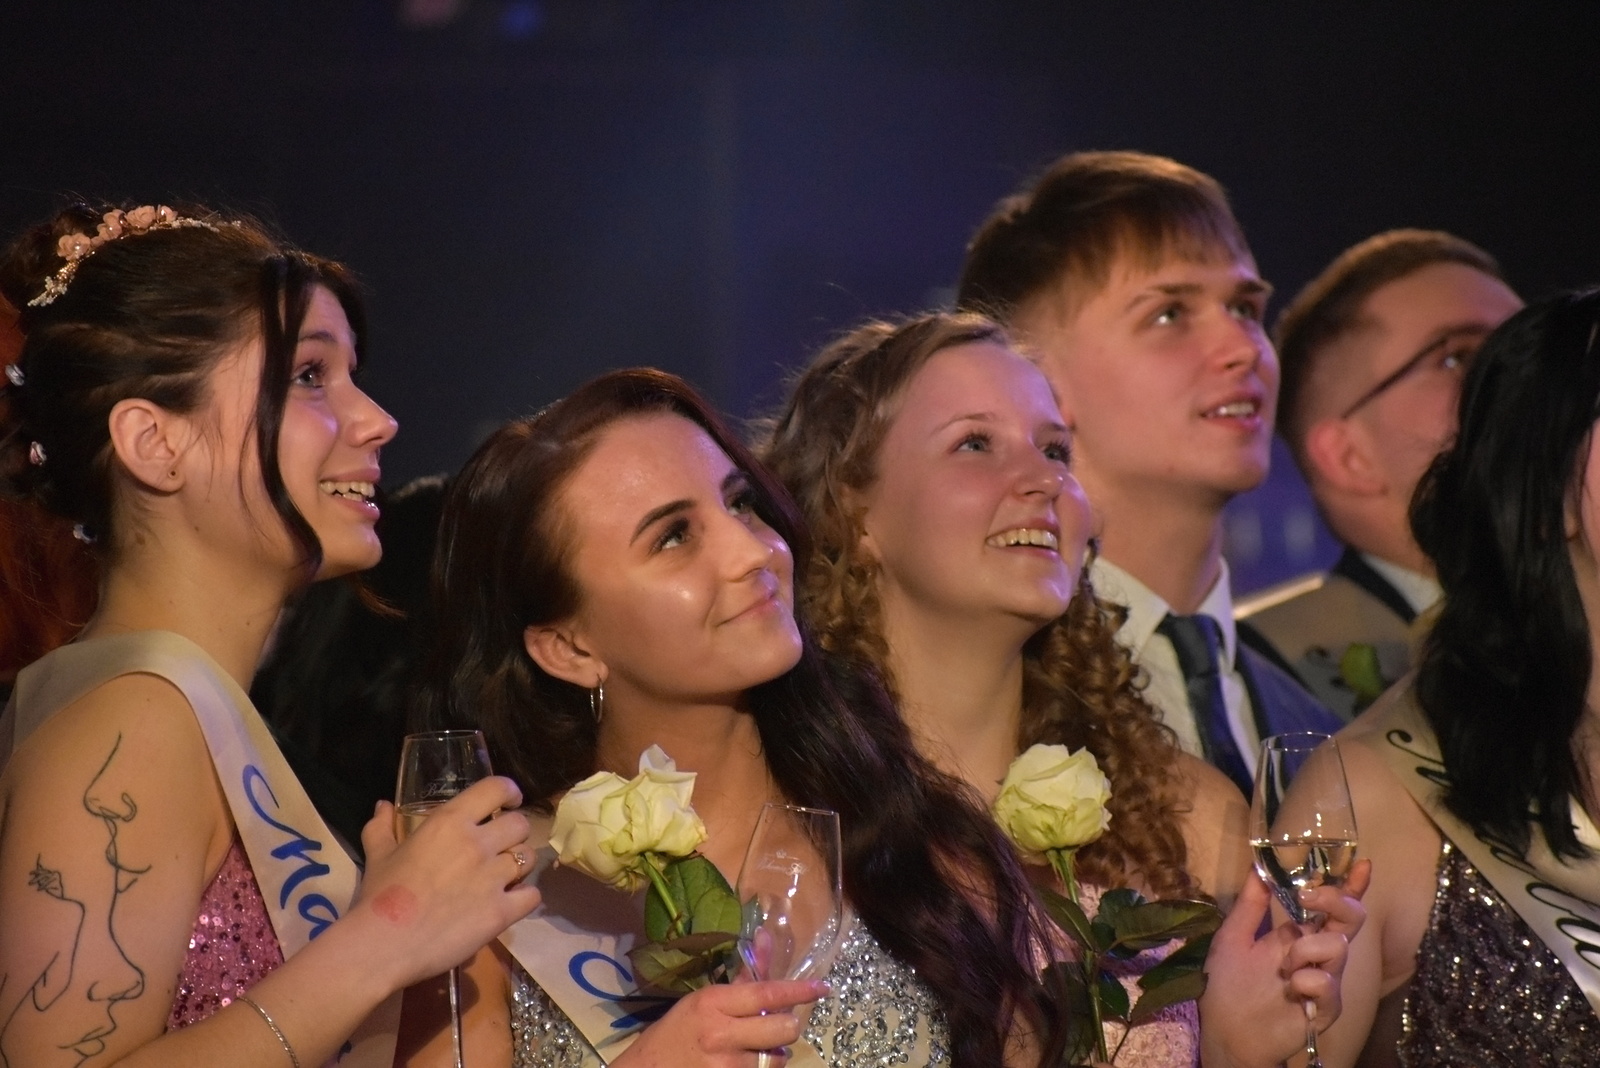 Podívejte se: Stochovští maturanti oslavili svůj ples v kladenském domě  kultury - Kladenský deník